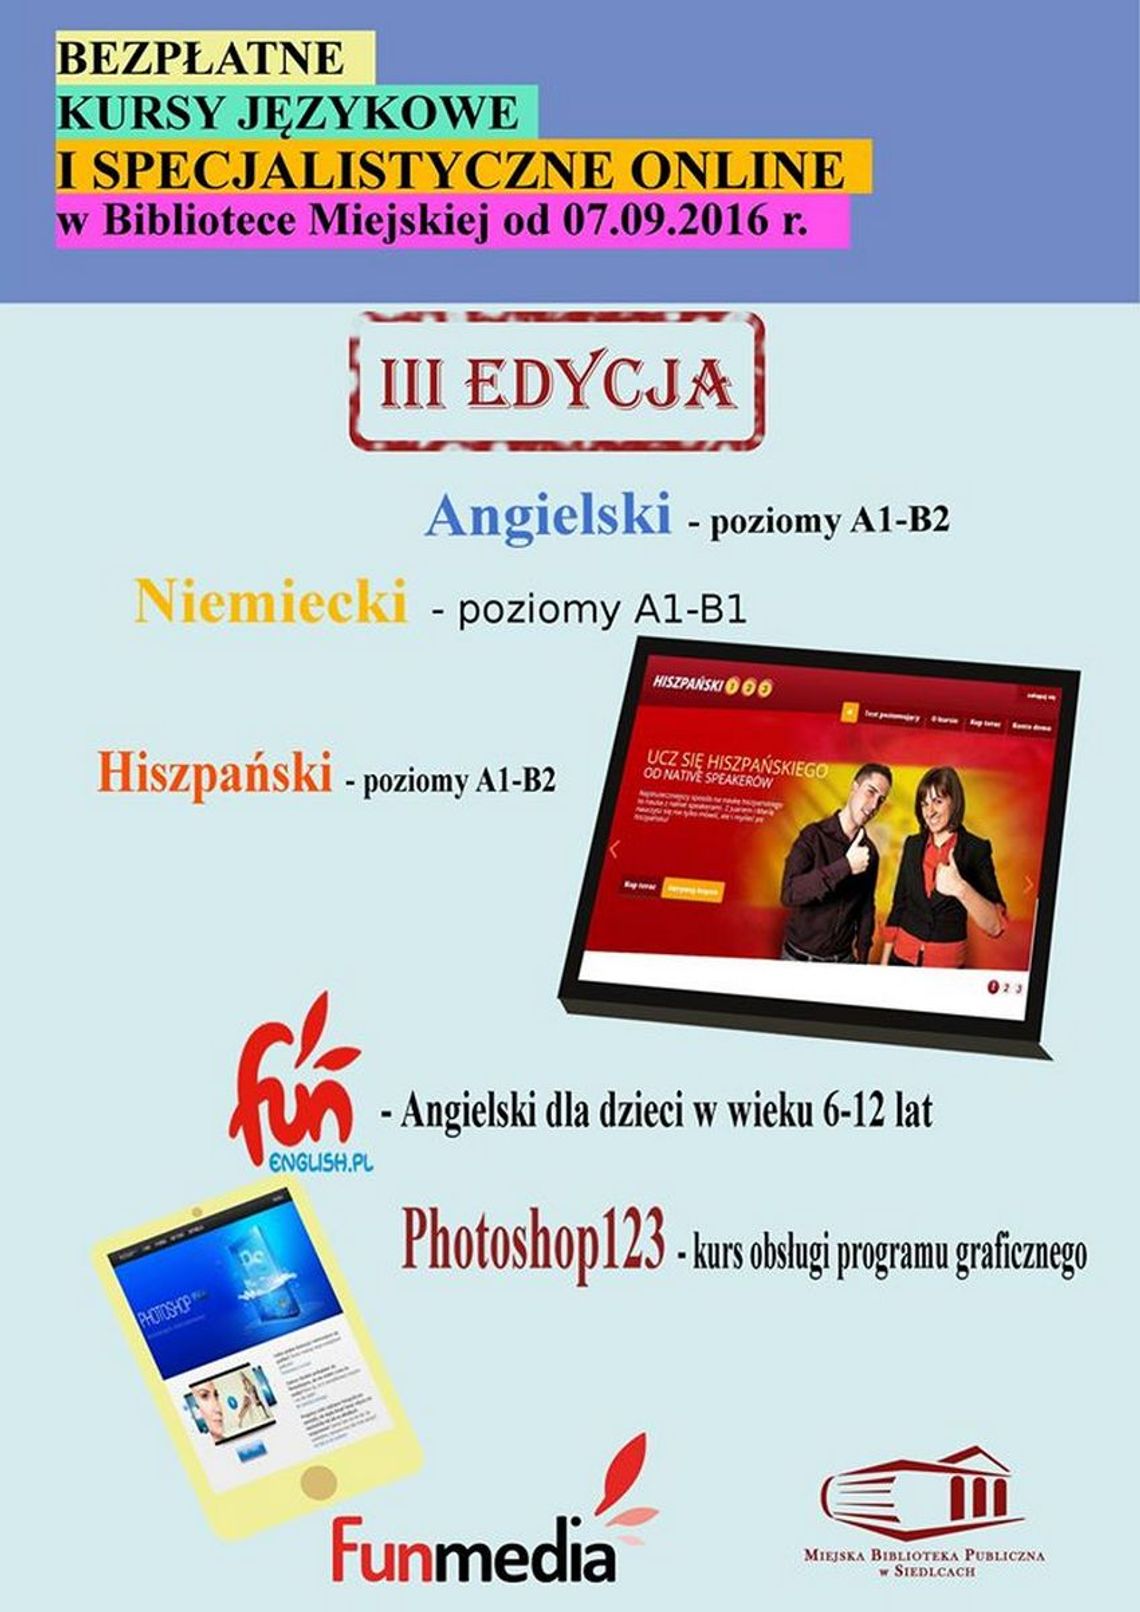 Bezpłatne e-kursy językowe